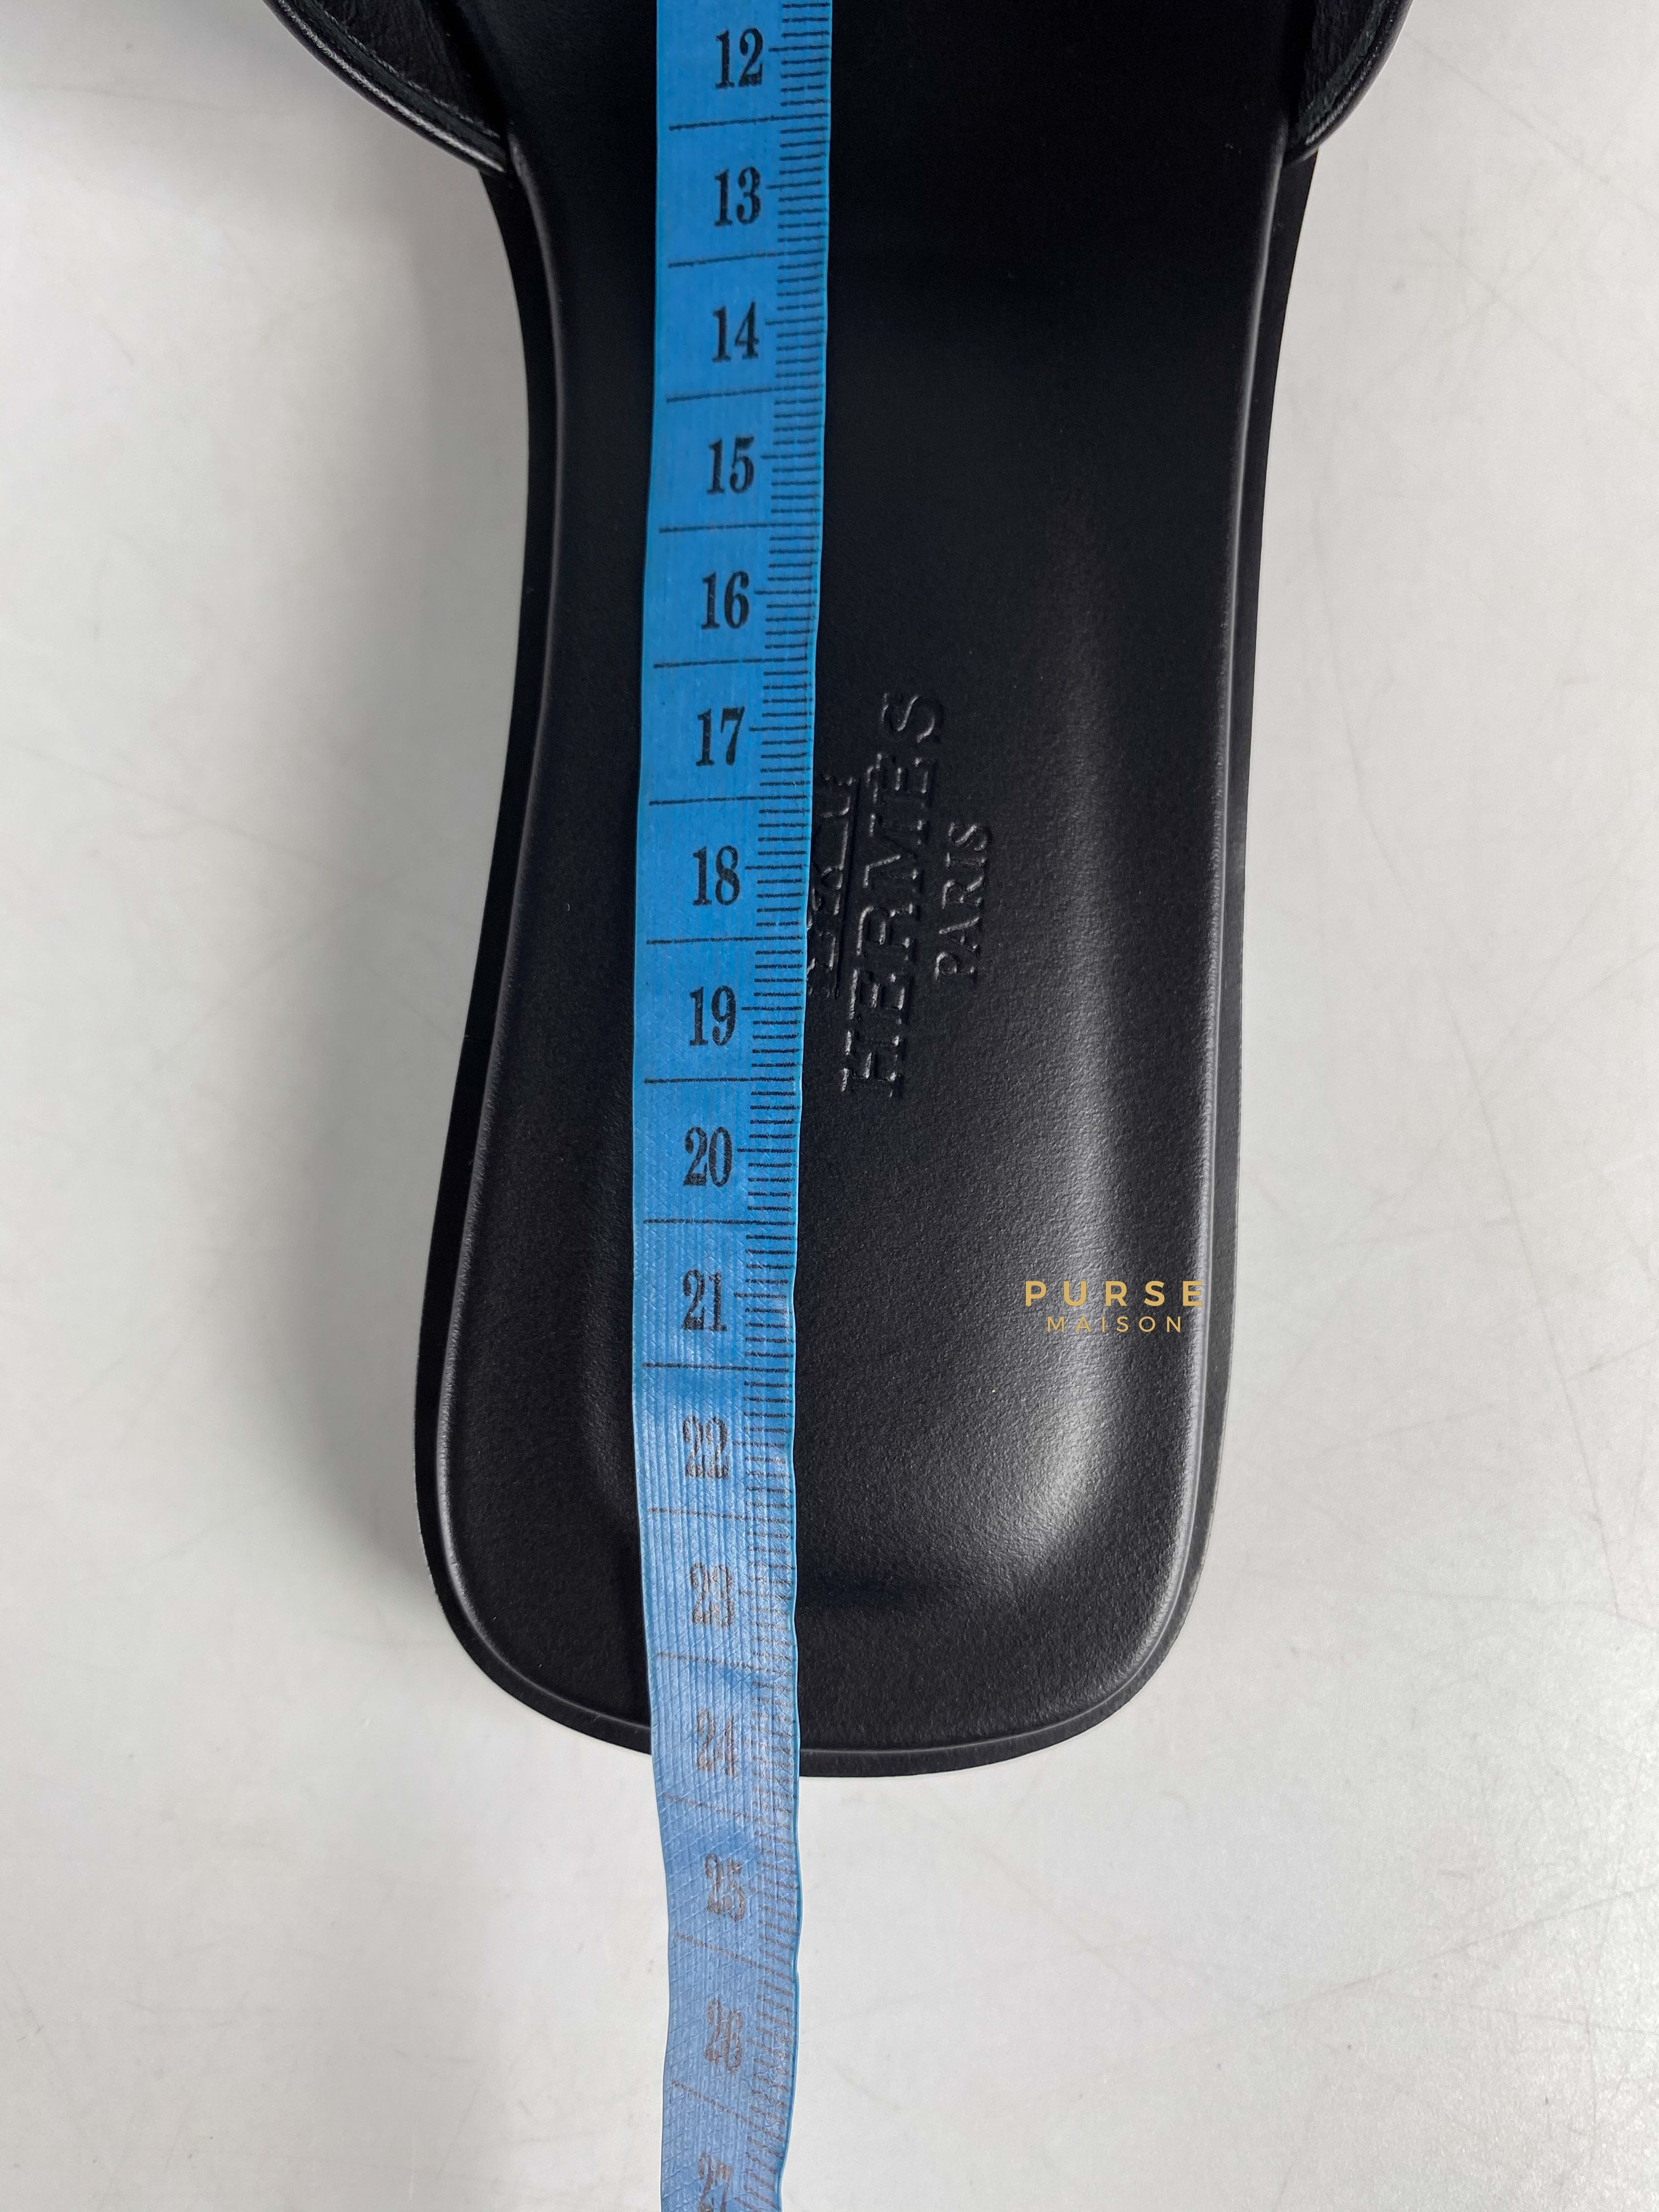 Hermes Oran Noir Sandals 37 EU (23.5cm) | Purse Maison Luxury Bags Shop